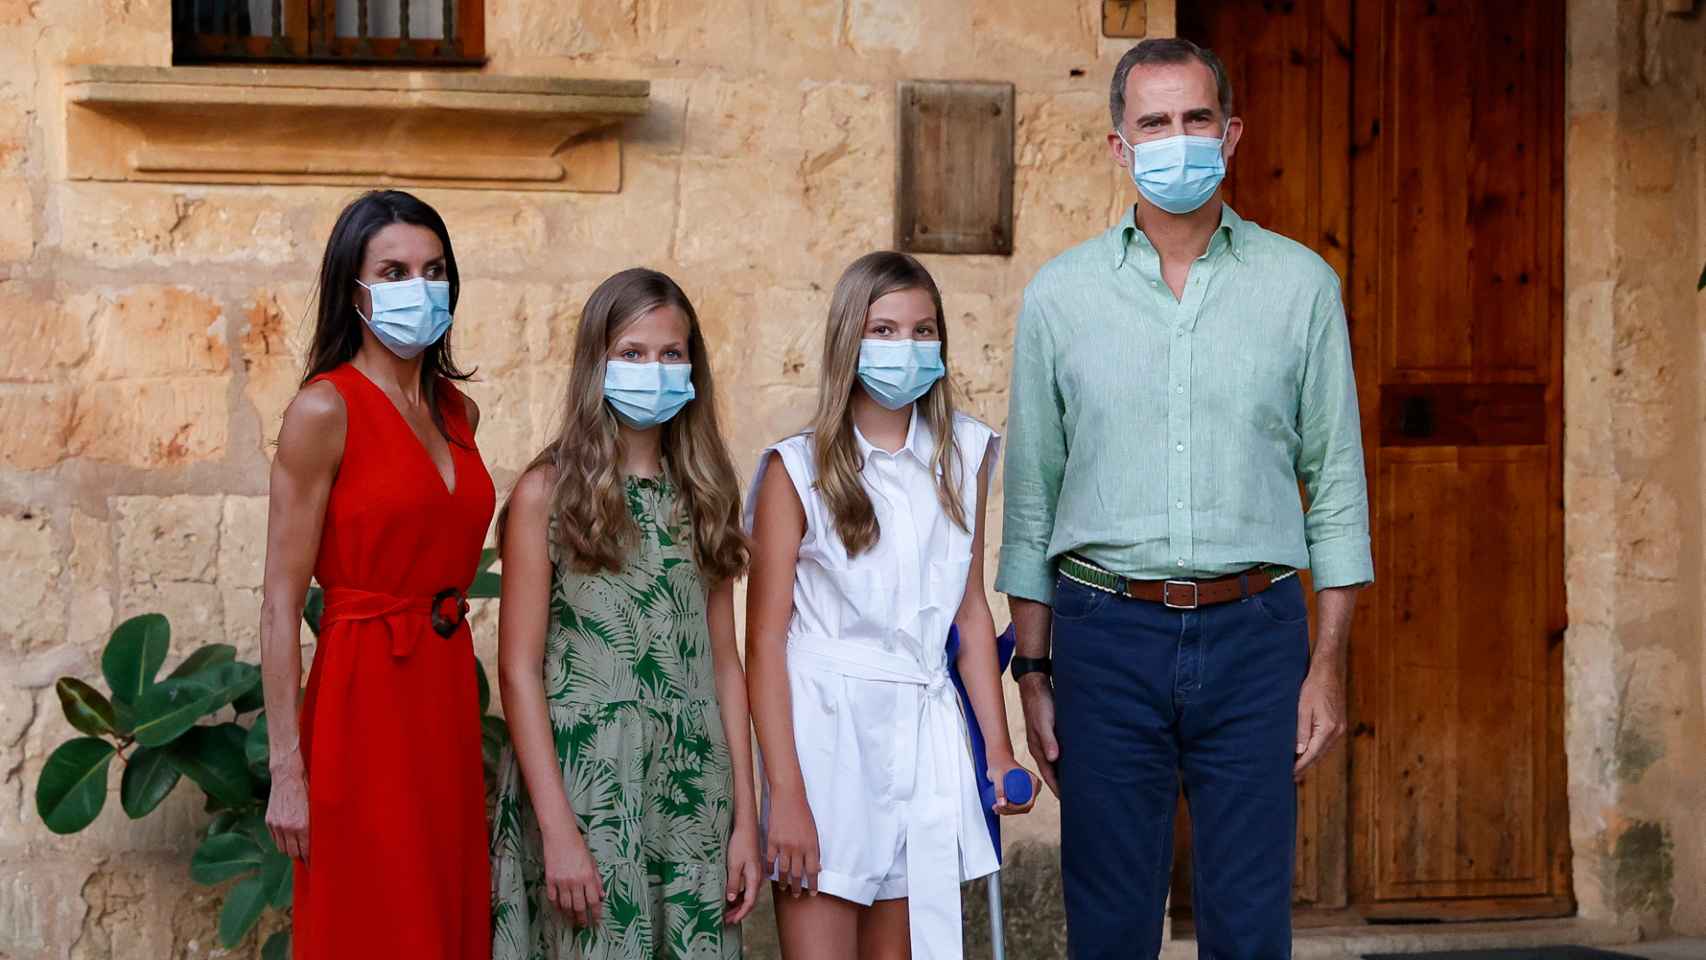 Los Reyes junto a sus hijas, Leonor y Sofía, el pasado verano en Palma de Mallorca.